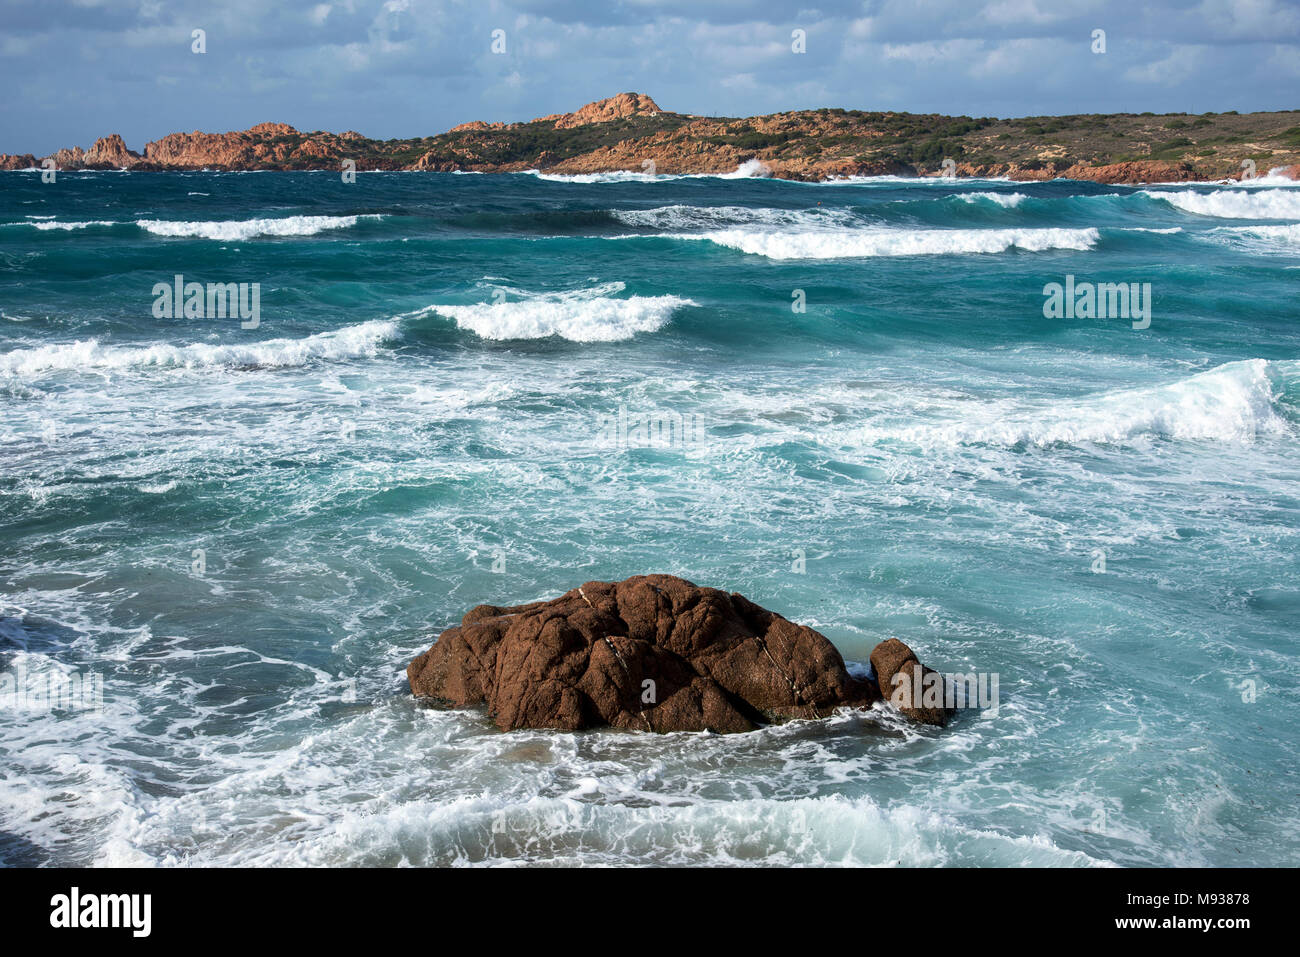 Una vista del mare Mediterraneo, con un forte rigonfiamento, a la spiaggia di Marinedda, Isola Rossa, Sardegna, Italia Foto Stock